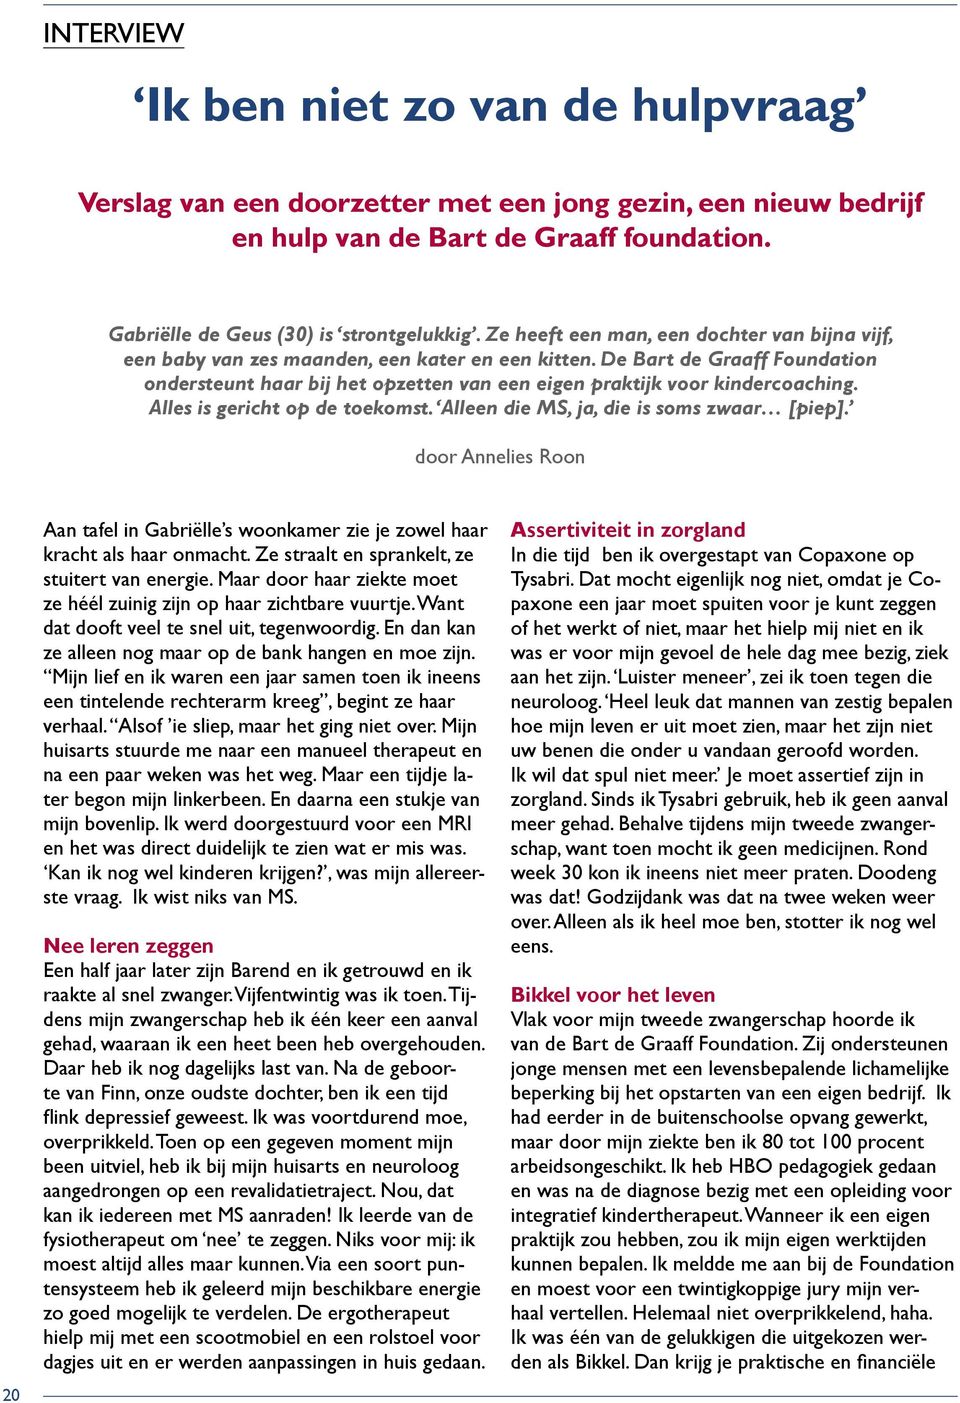 De Bart de Graaff Foundation ondersteunt haar bij het opzetten van een eigen praktijk voor kindercoaching. Alles is gericht op de toekomst. Alleen die MS, ja, die is soms zwaar [piep].